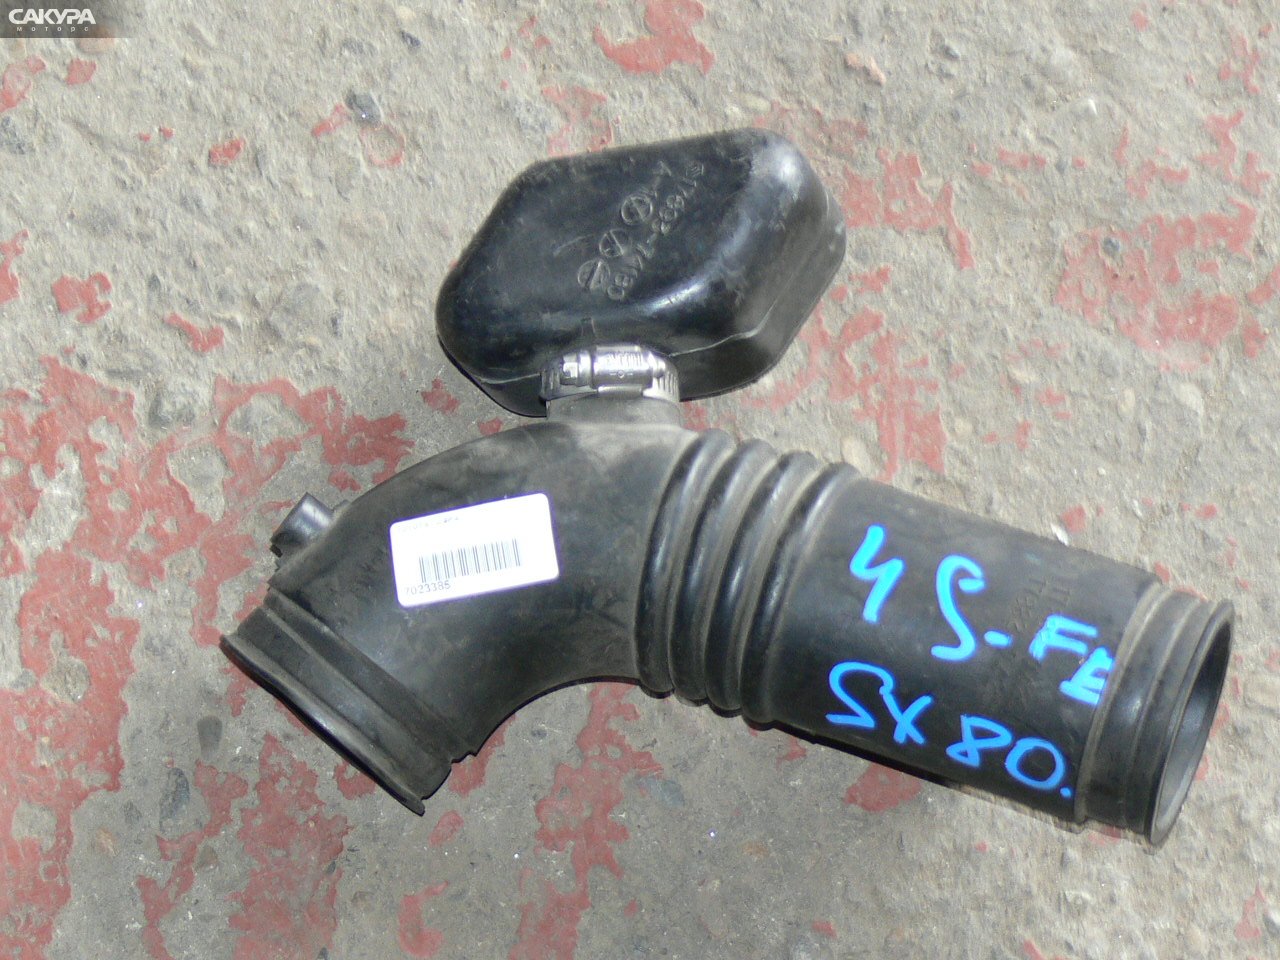 Патрубок воздушного фильтра Toyota Chaser SX80 4S-FE: купить в Сакура Иркутск.